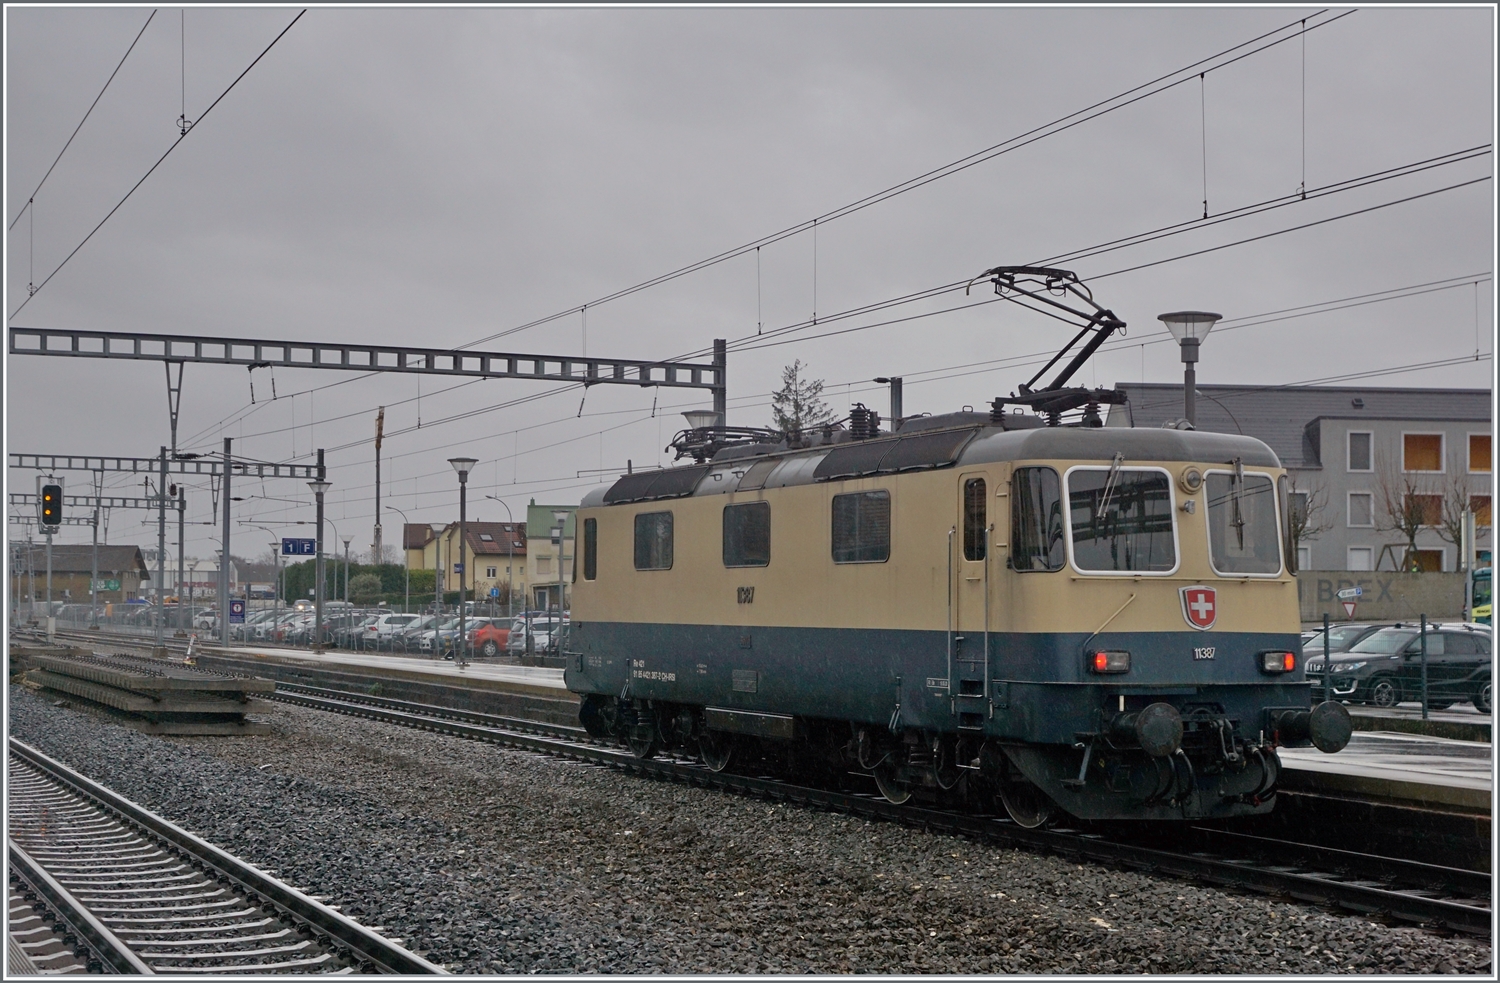 Die von Morges gekommene IRSI Re 4/4 11387 ist in Gland angekommen. Besonders die vier letzten Kilometer sind betrieblich eine Herausforderung, da die Lok von der Dienststation bei Bursinel im Wechselbetrieb auf dem rechten Gleis nach Gland fahren muss, was bei sieben Züge pro Stunde in der Gegenrichtung eher wenig Spielraum lässt. So ist nun die Lok dabei, das Gleis zu räumen, unmittelbar darauf wird der IC1 Genève - St.Gallen hier durchfahren. 

Die Re 4/4 II 11387 wird auf ein Industriegleis in Richtung Kieswerk geleitet, um dort ihren Zug nach Apples abzuholen. Die angemietete IRSI/IGE Re 4/4 II 11387 (Re 421 387-2) ersetzt die zur Zeit in der Revision in Bellinzona weilende BAM MBC MBC Re 420 506. 

22. Feb. 2024